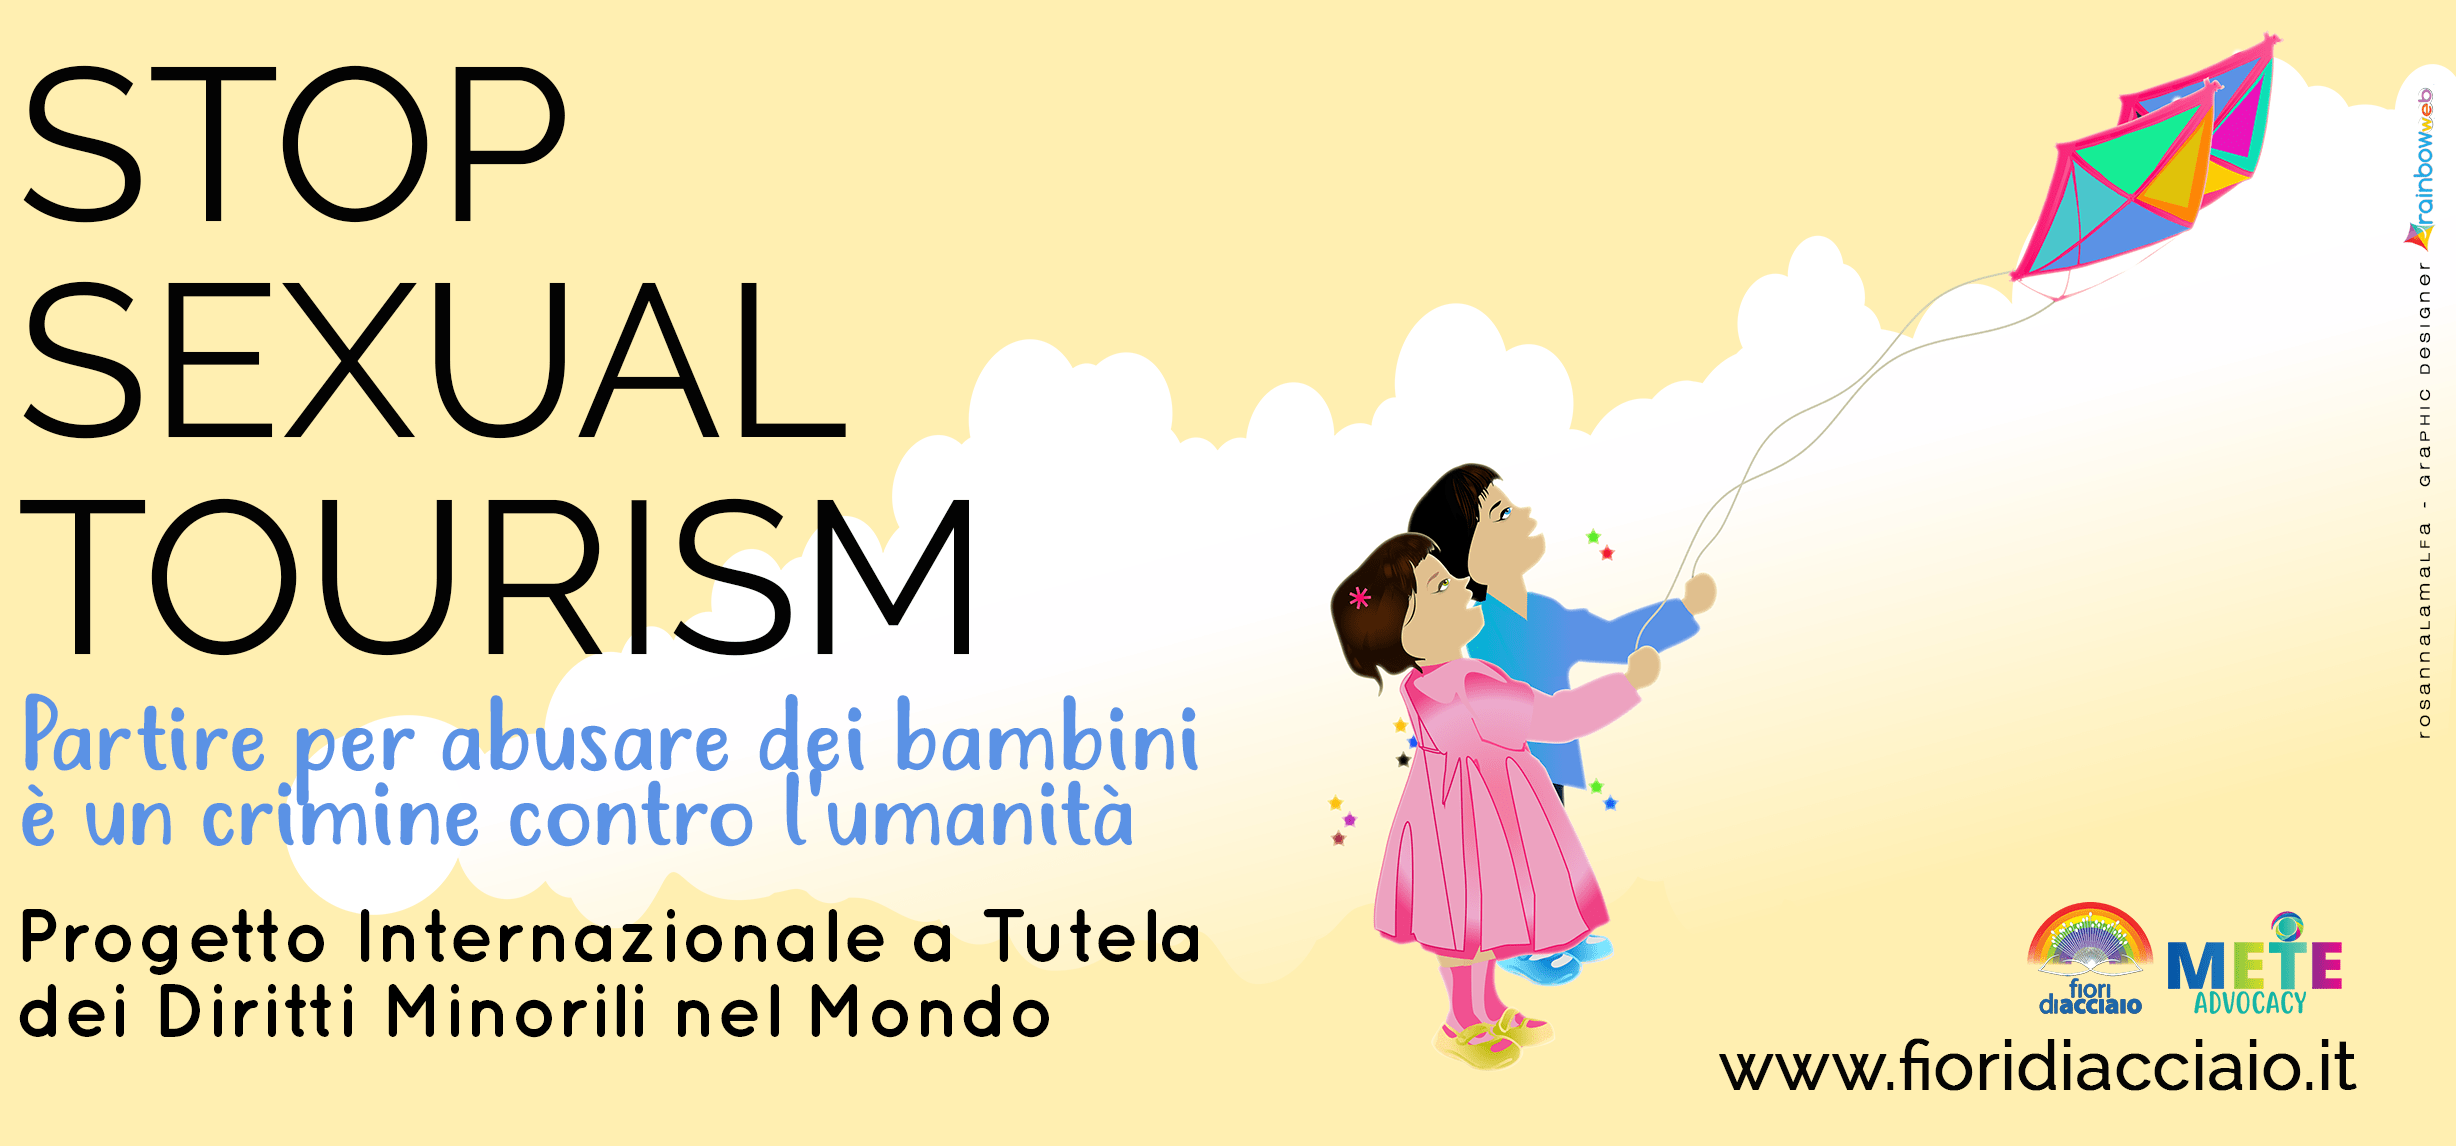 Turismo sessuale, Italia prima nel mondo: allarme per i turisti pedofili